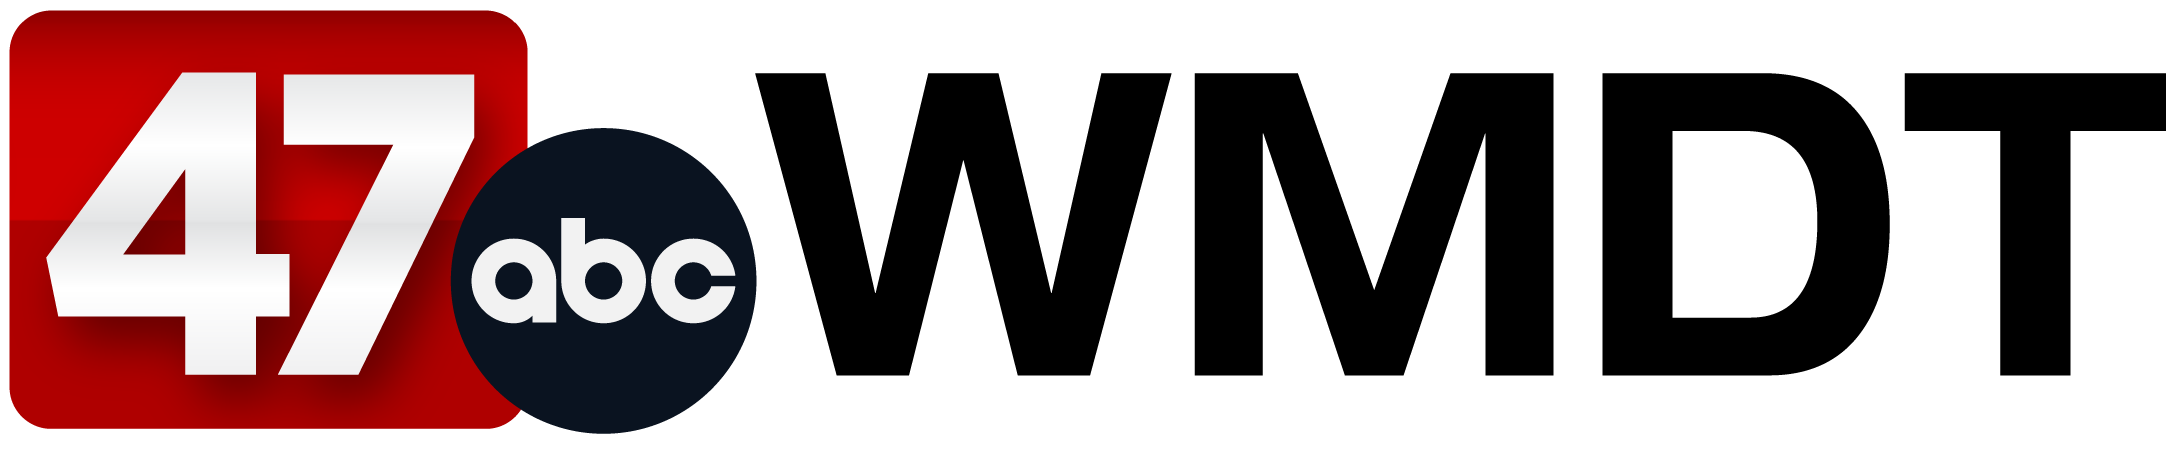 wmdt 43 logo